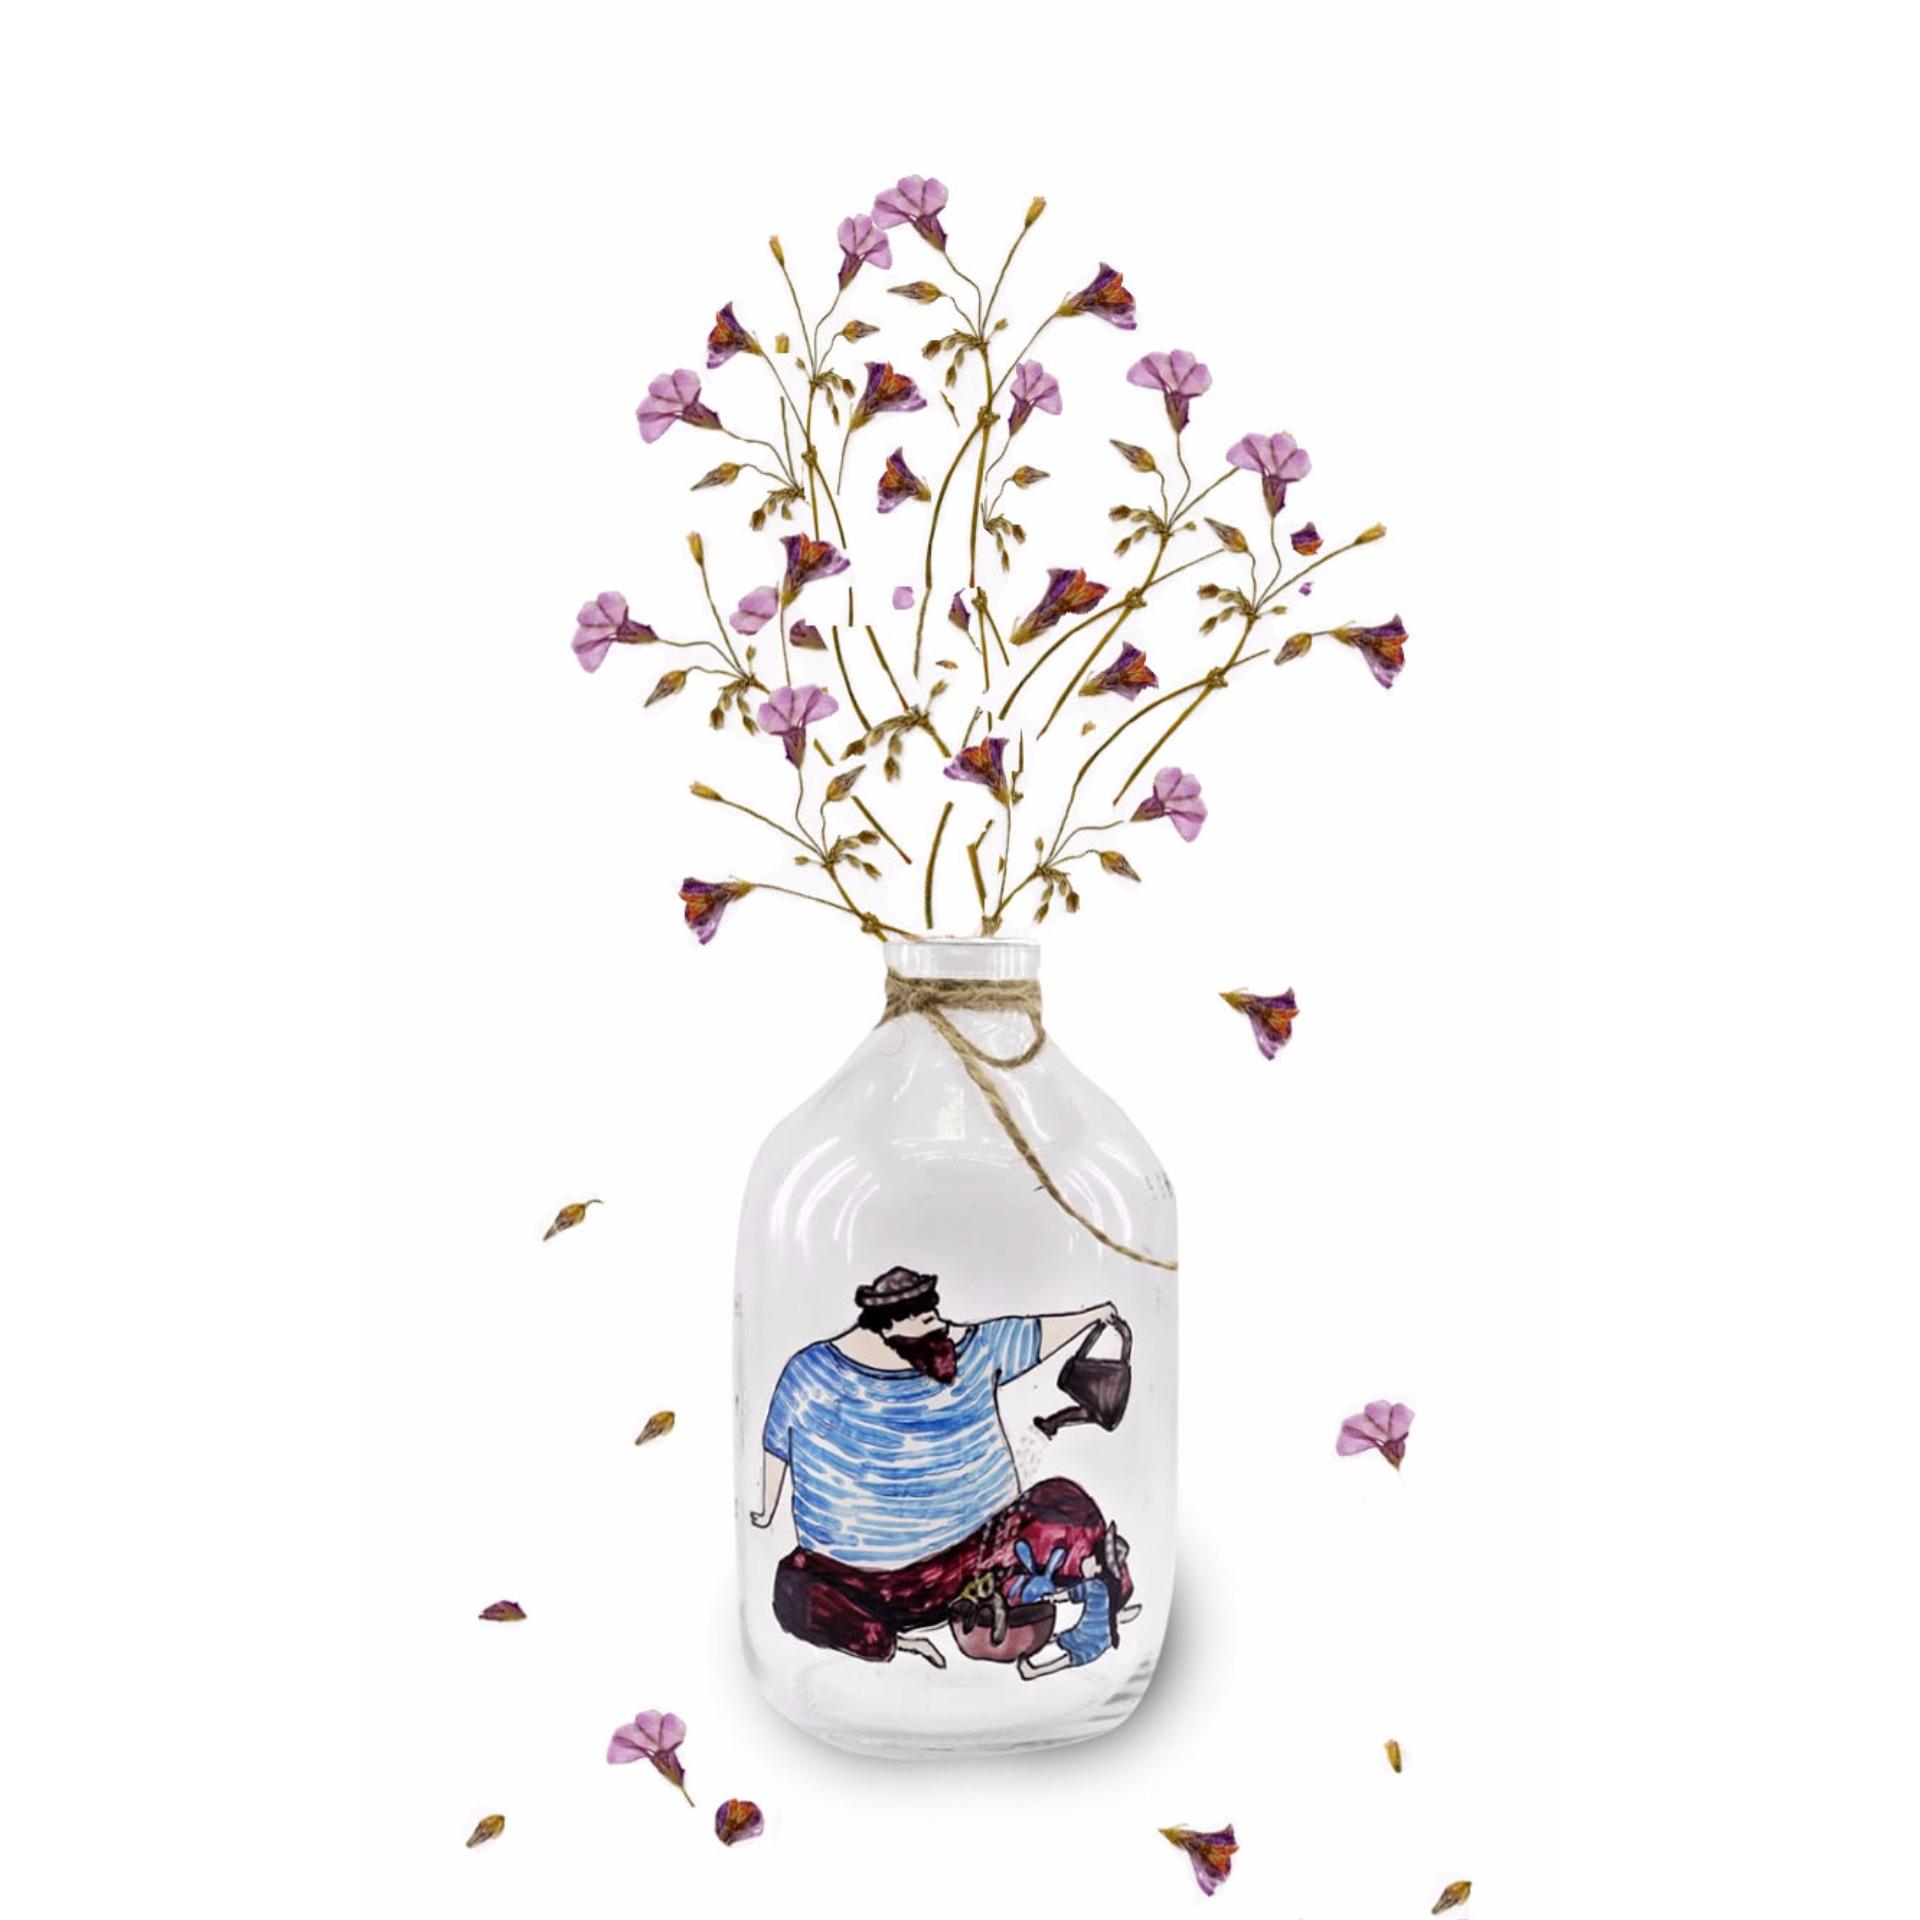 Bình cắm hoa thủy tinh vẽ thủ công: Hãy cùng khám phá bức tranh vẽ bình cắm hoa thủy tinh tuyệt đẹp! Với đường nét tinh xảo, các bông hoa tươi tắn được tái hiện sống động trên bề mặt thủy tinh sẽ mê hoặc bạn ngay từ cái nhìn đầu tiên.